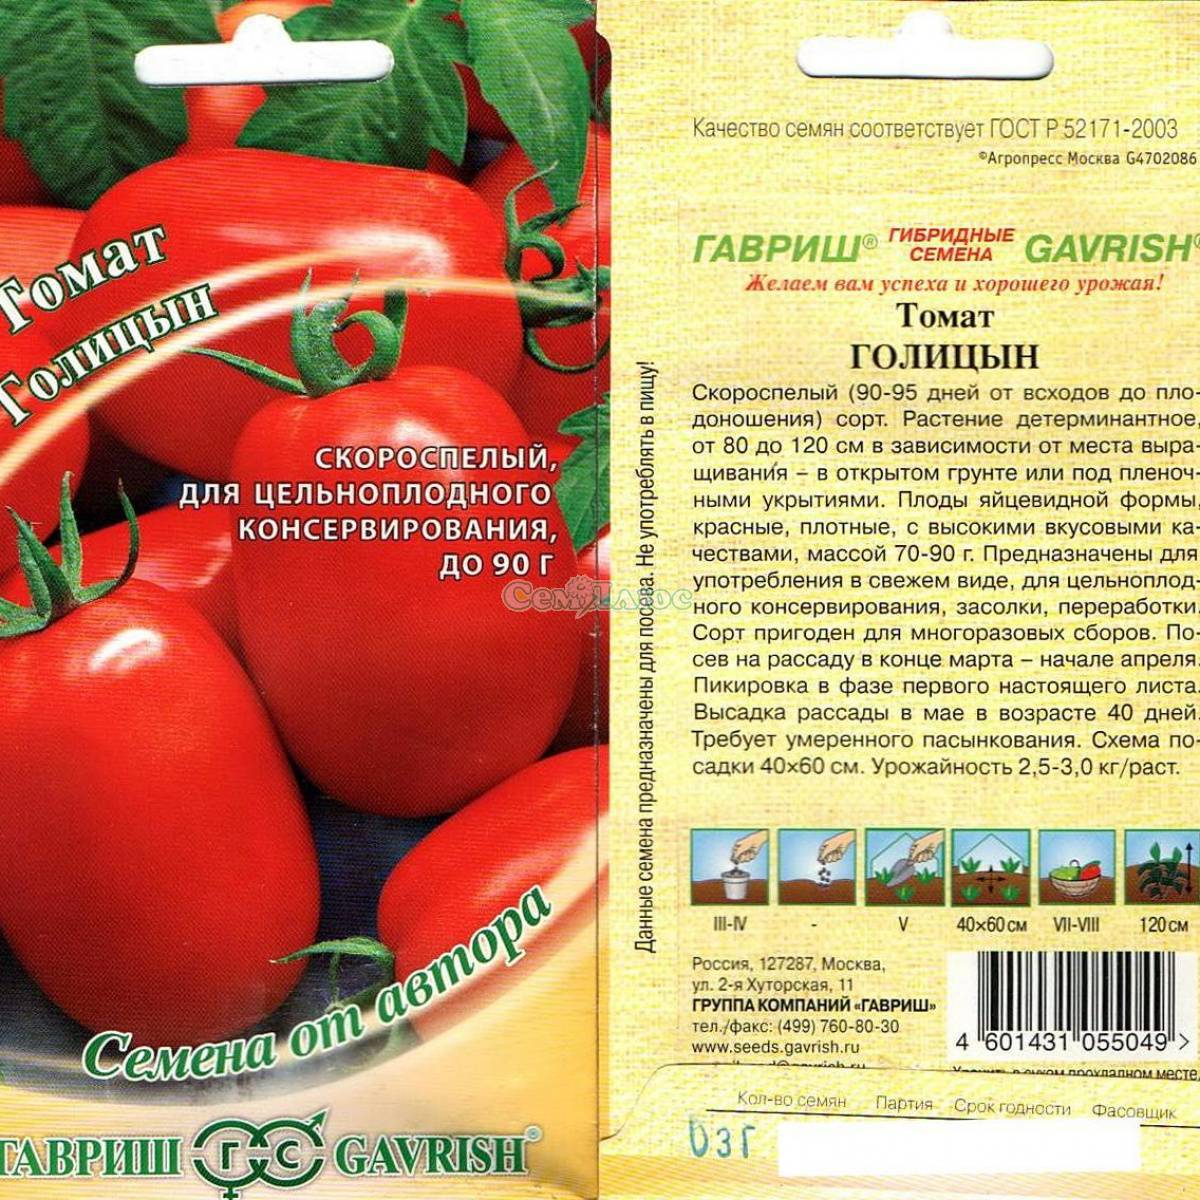 Сорта томатов для консервации: для засолки, для маринования, для соусов | огородники